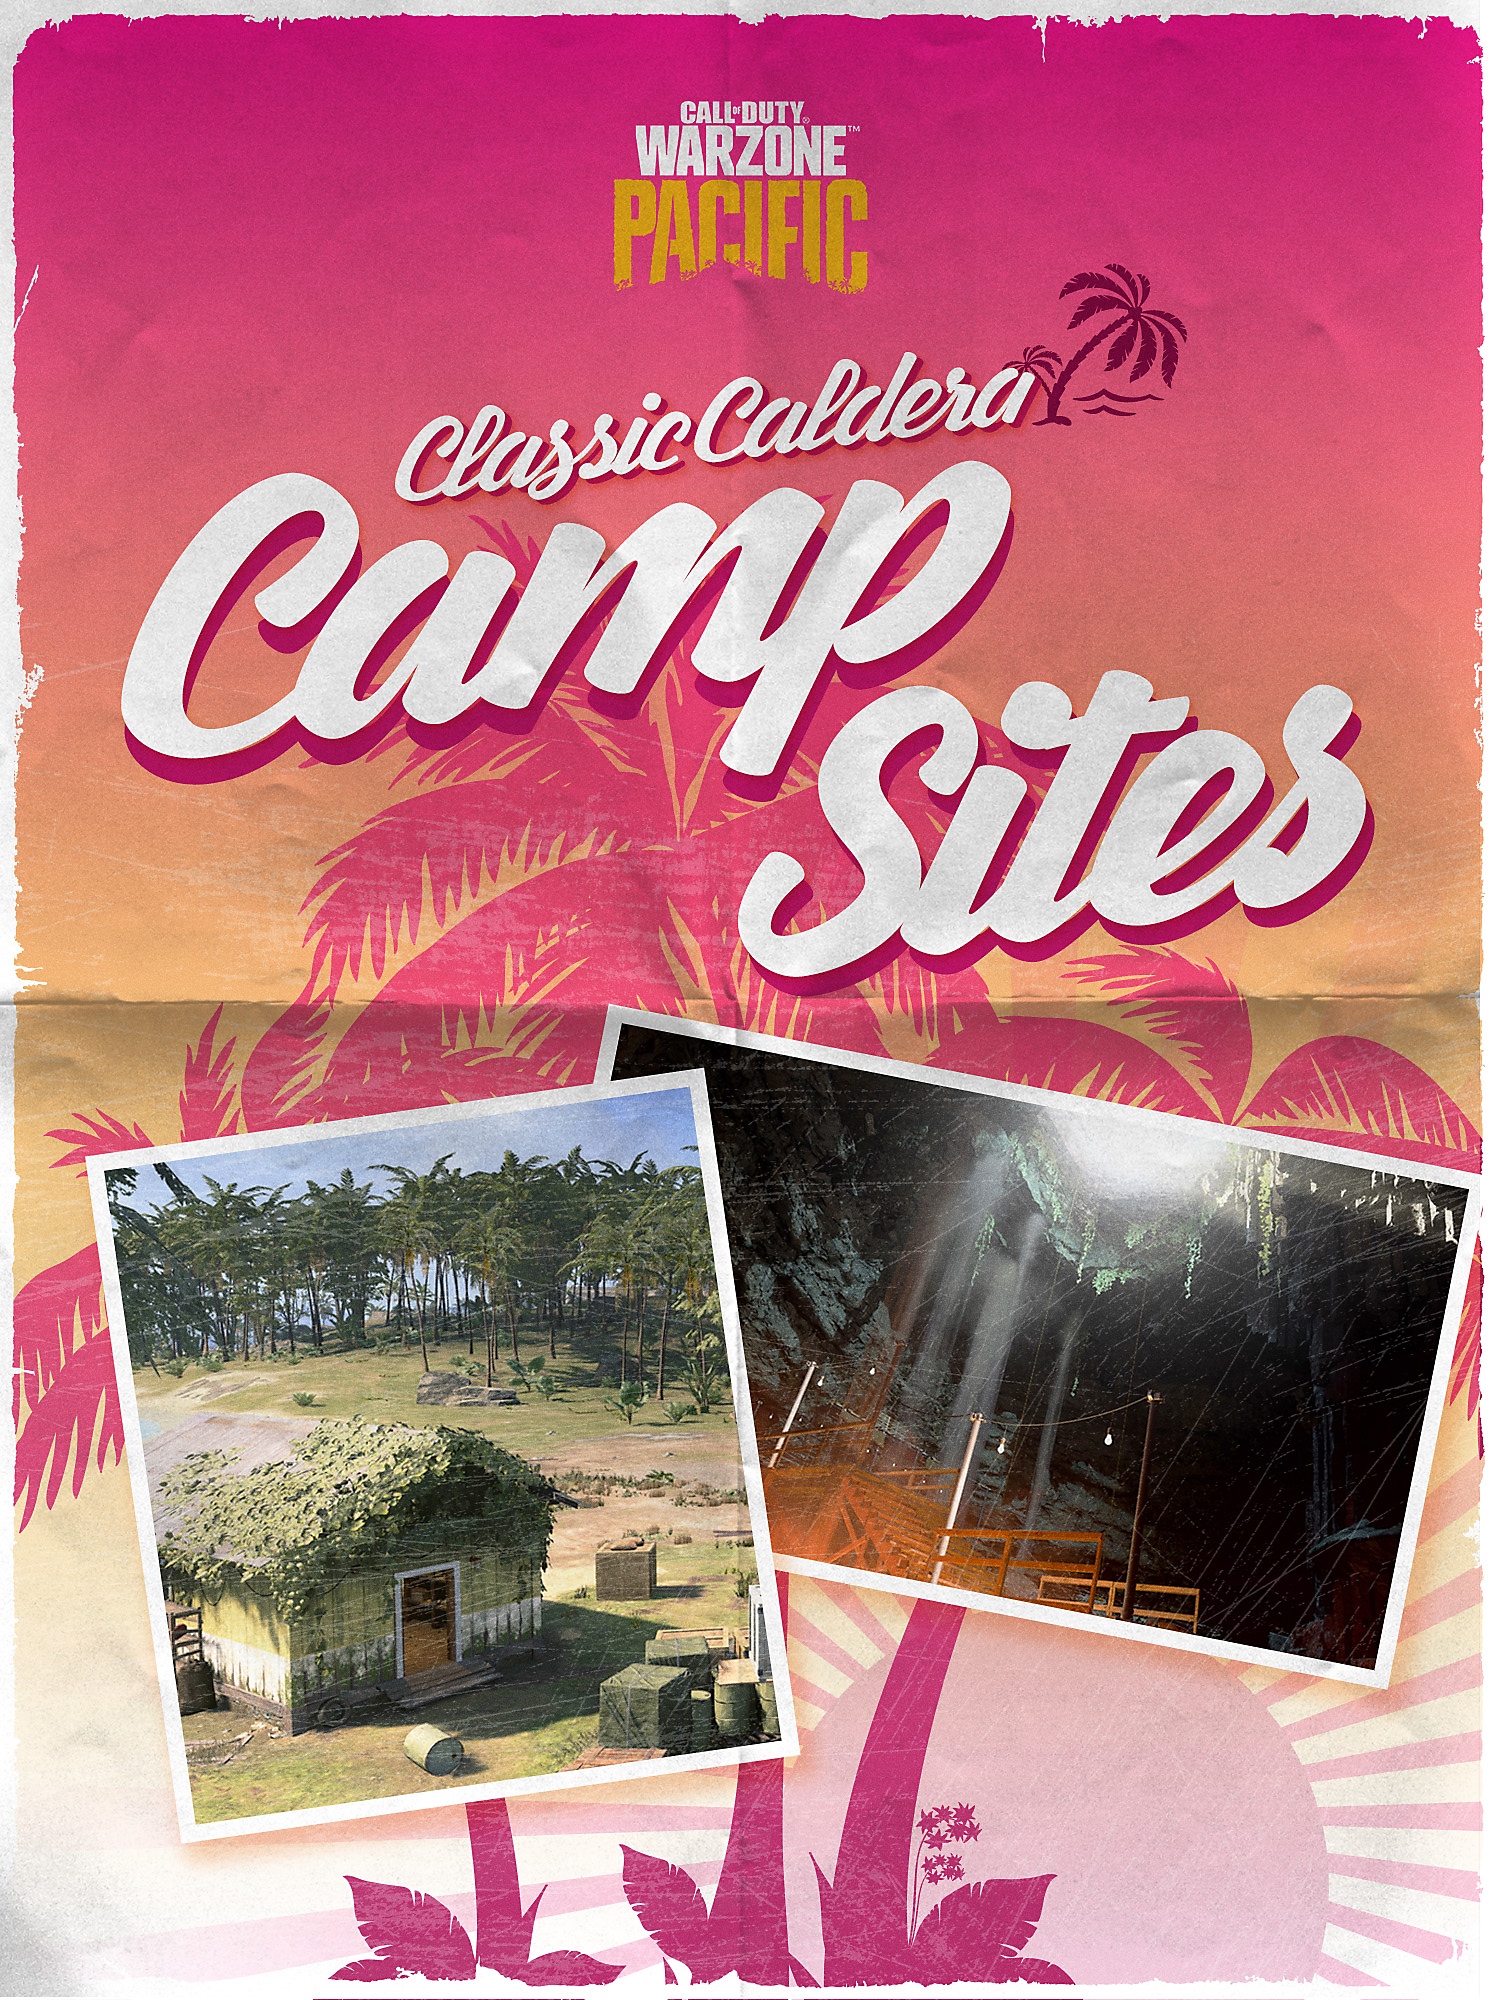 Classic Caldera Campsites brochure cover